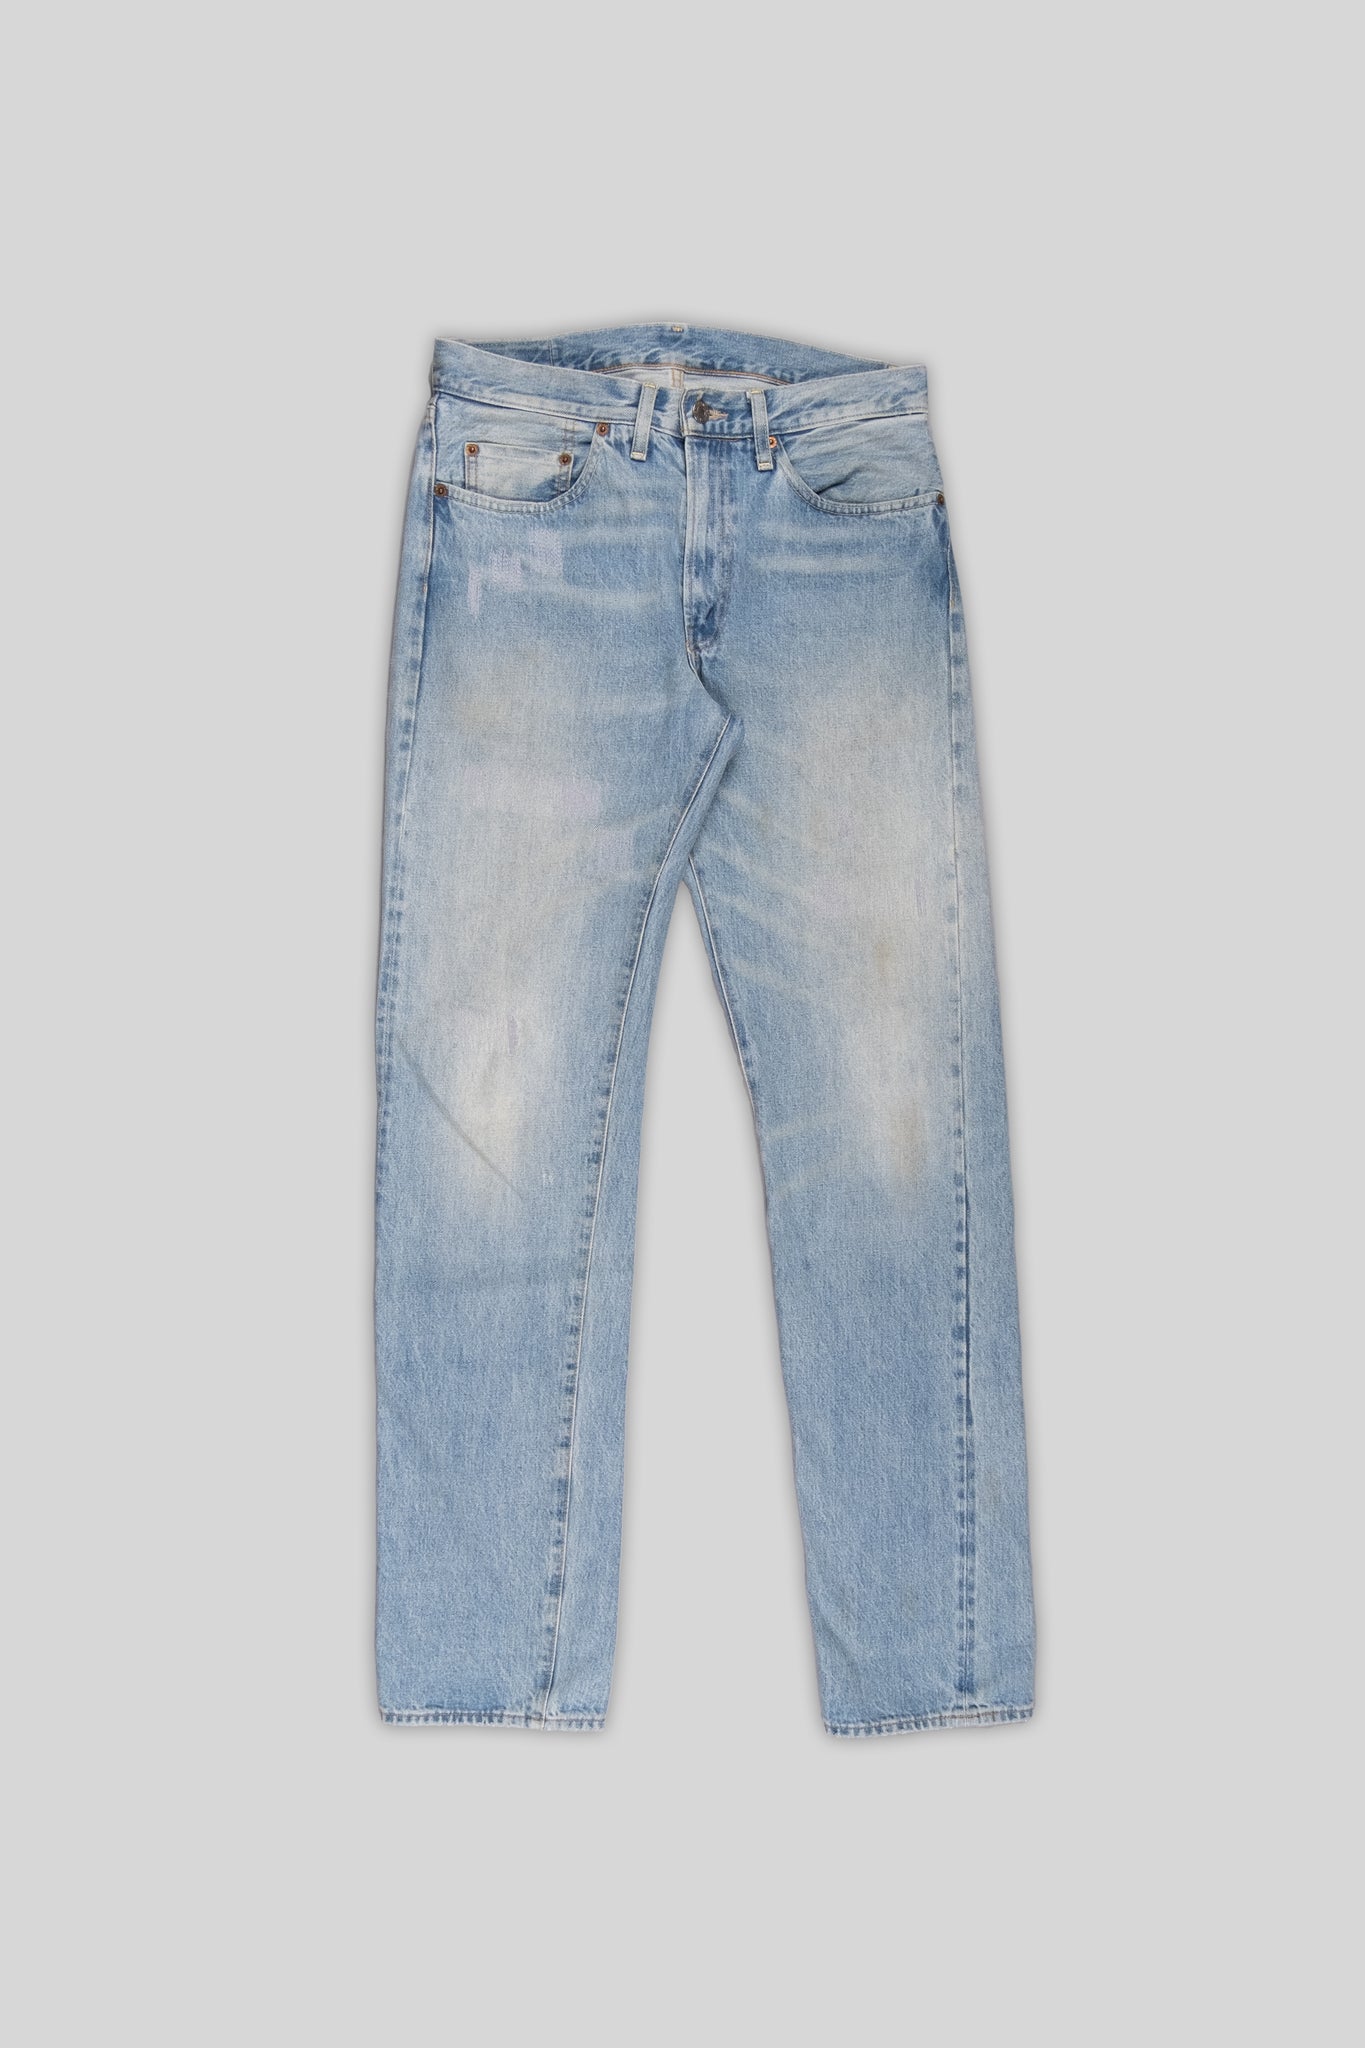 Levis Vintage 1954 Original Fit Jeans